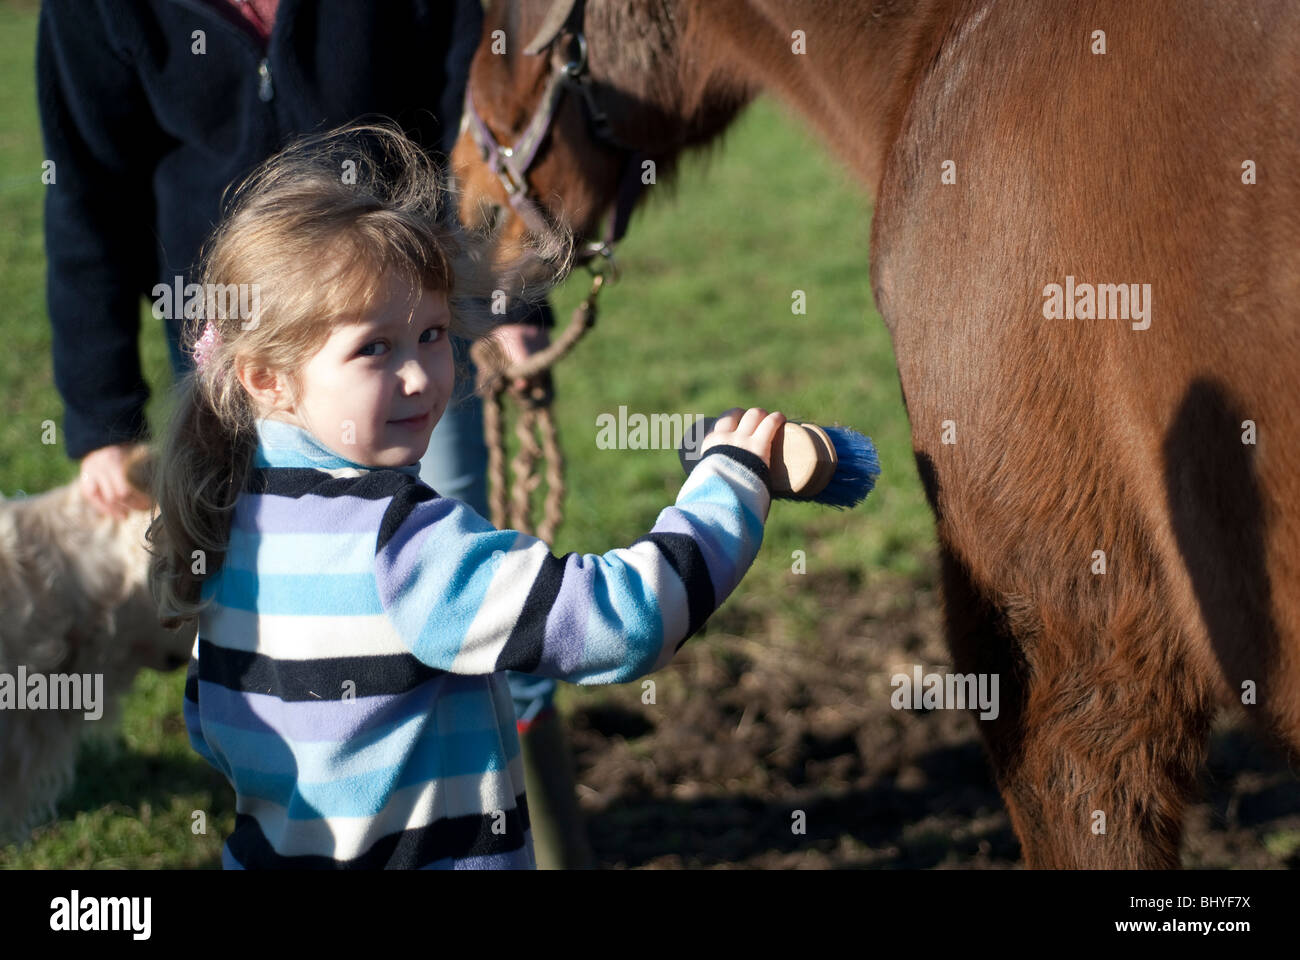 Young Girl brushing animal cheval. Modèle entièrement libéré Banque D'Images